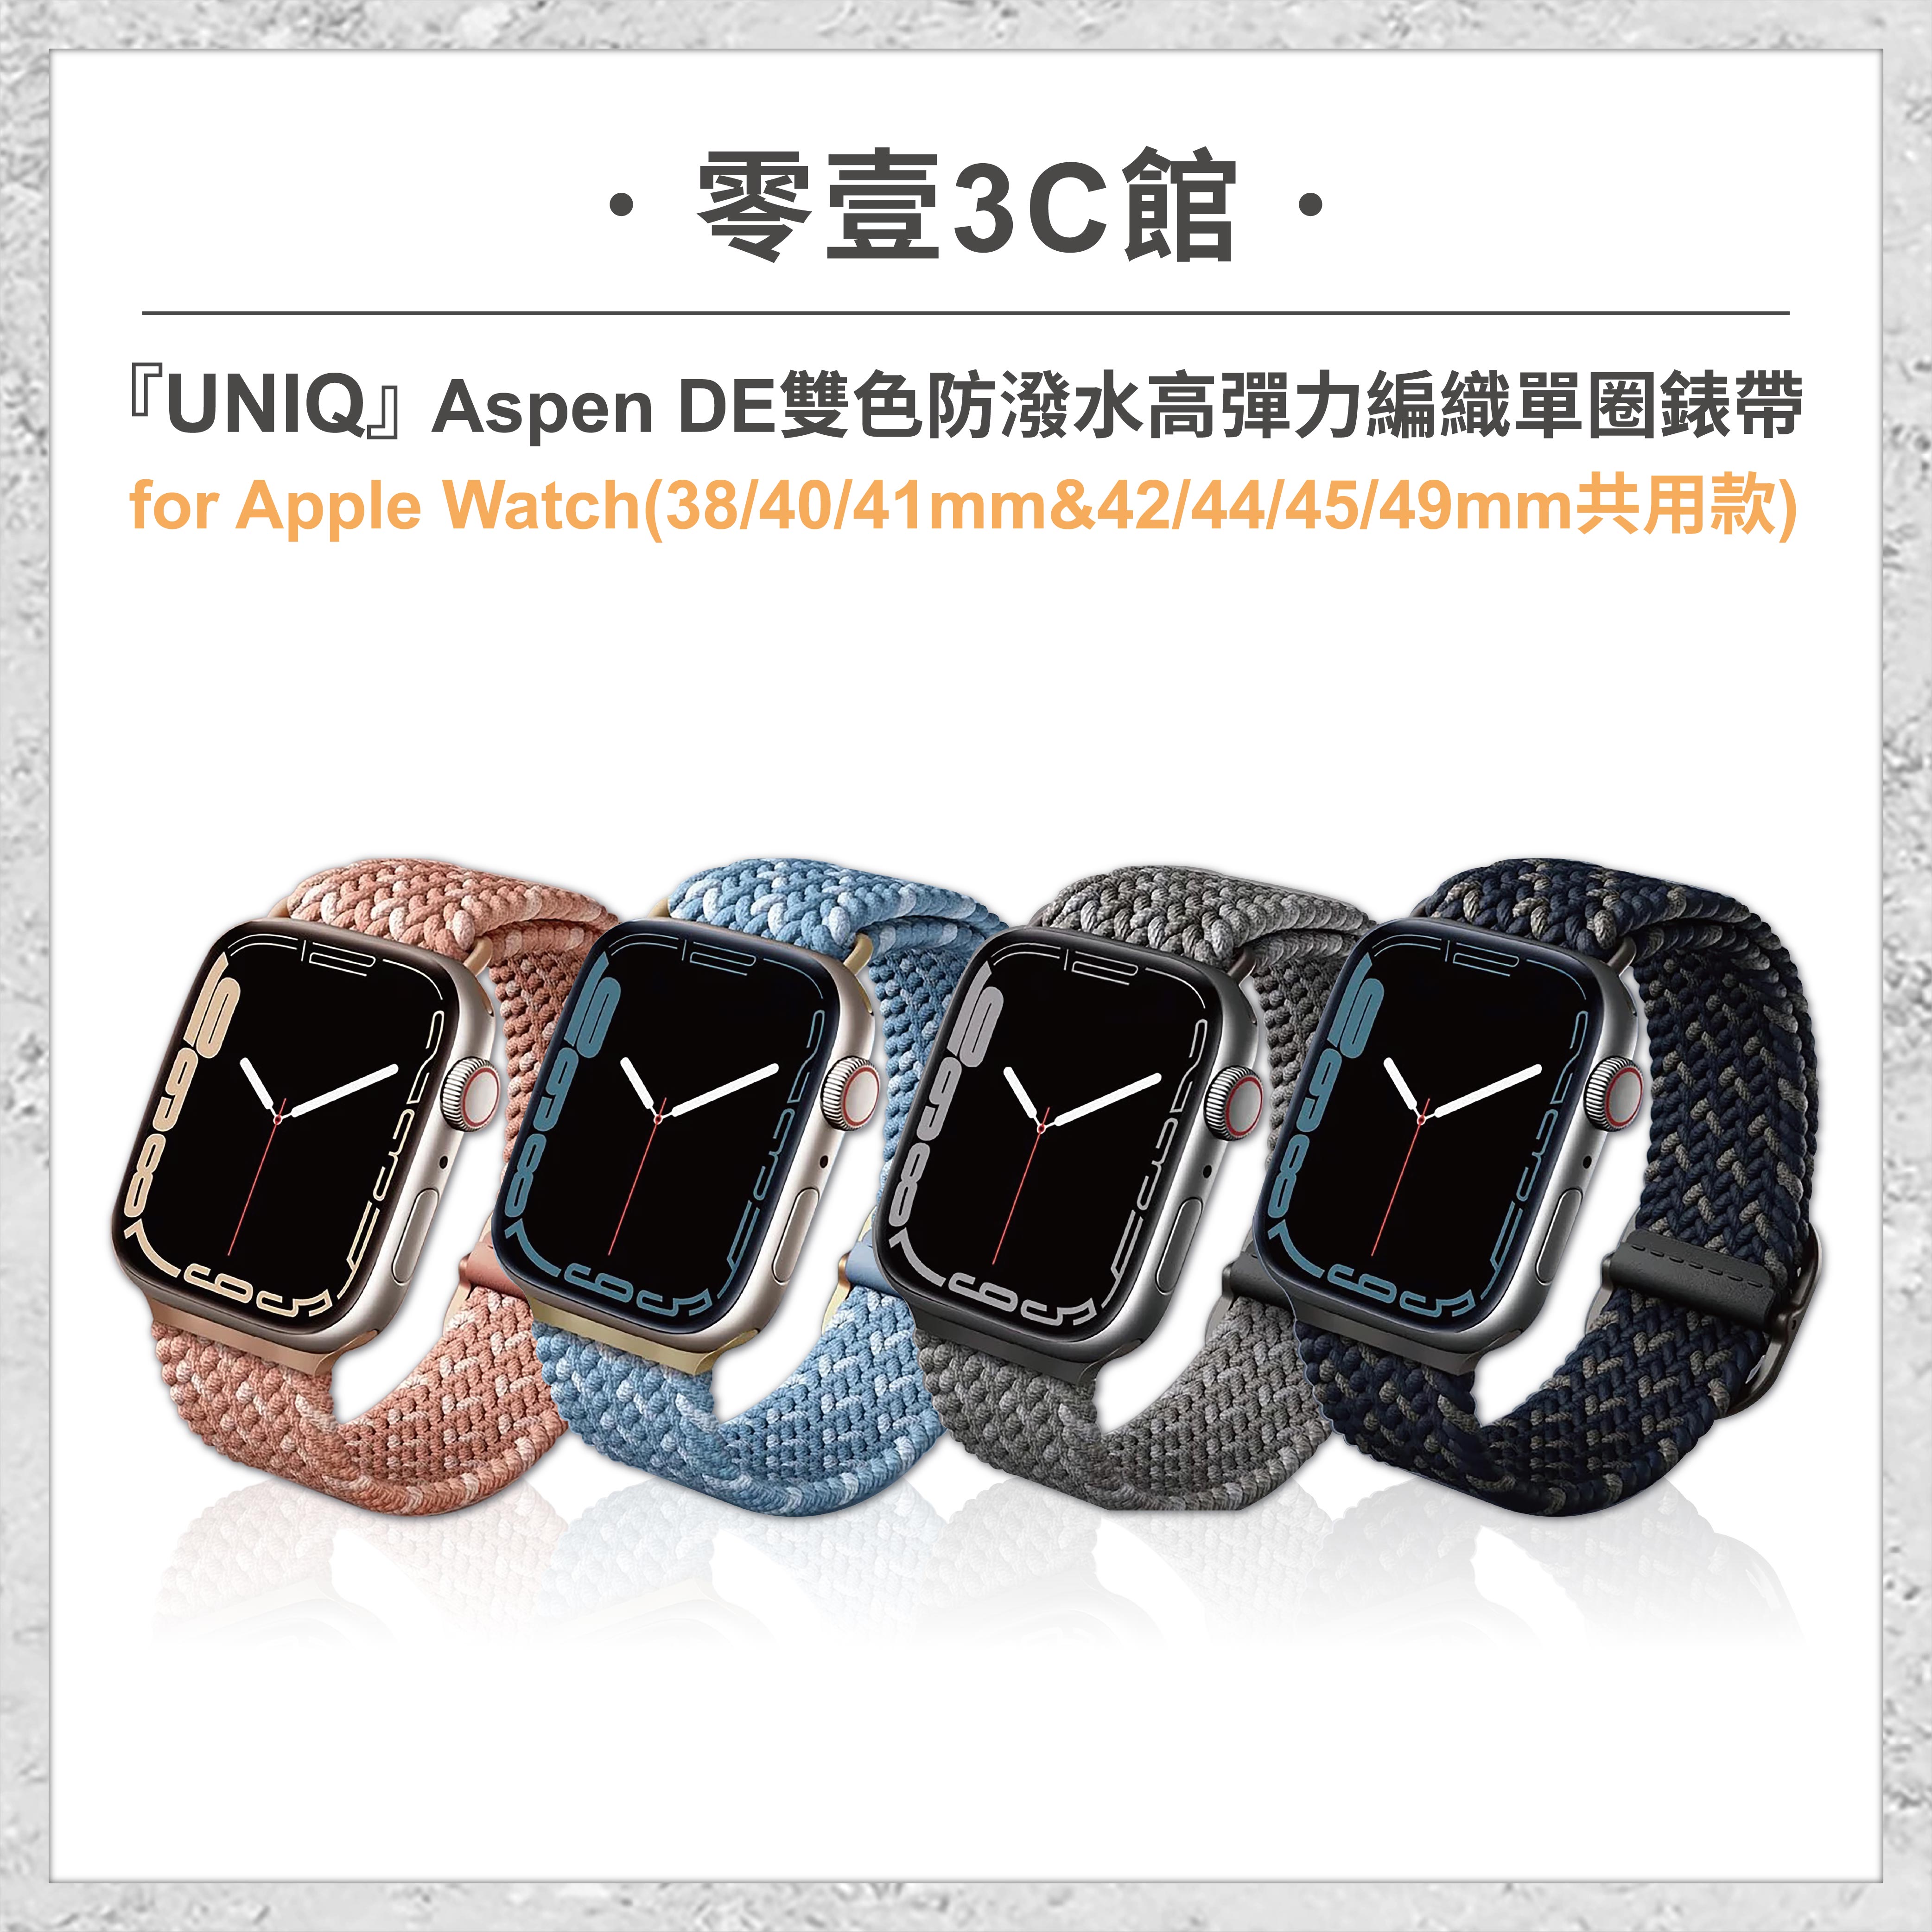 『UNIQ』Aspen DE雙色防潑水高彈力編織單圈錶帶for Apple Watch (38/40/41&42/44/45/49mm共用款) 手錶保護殼